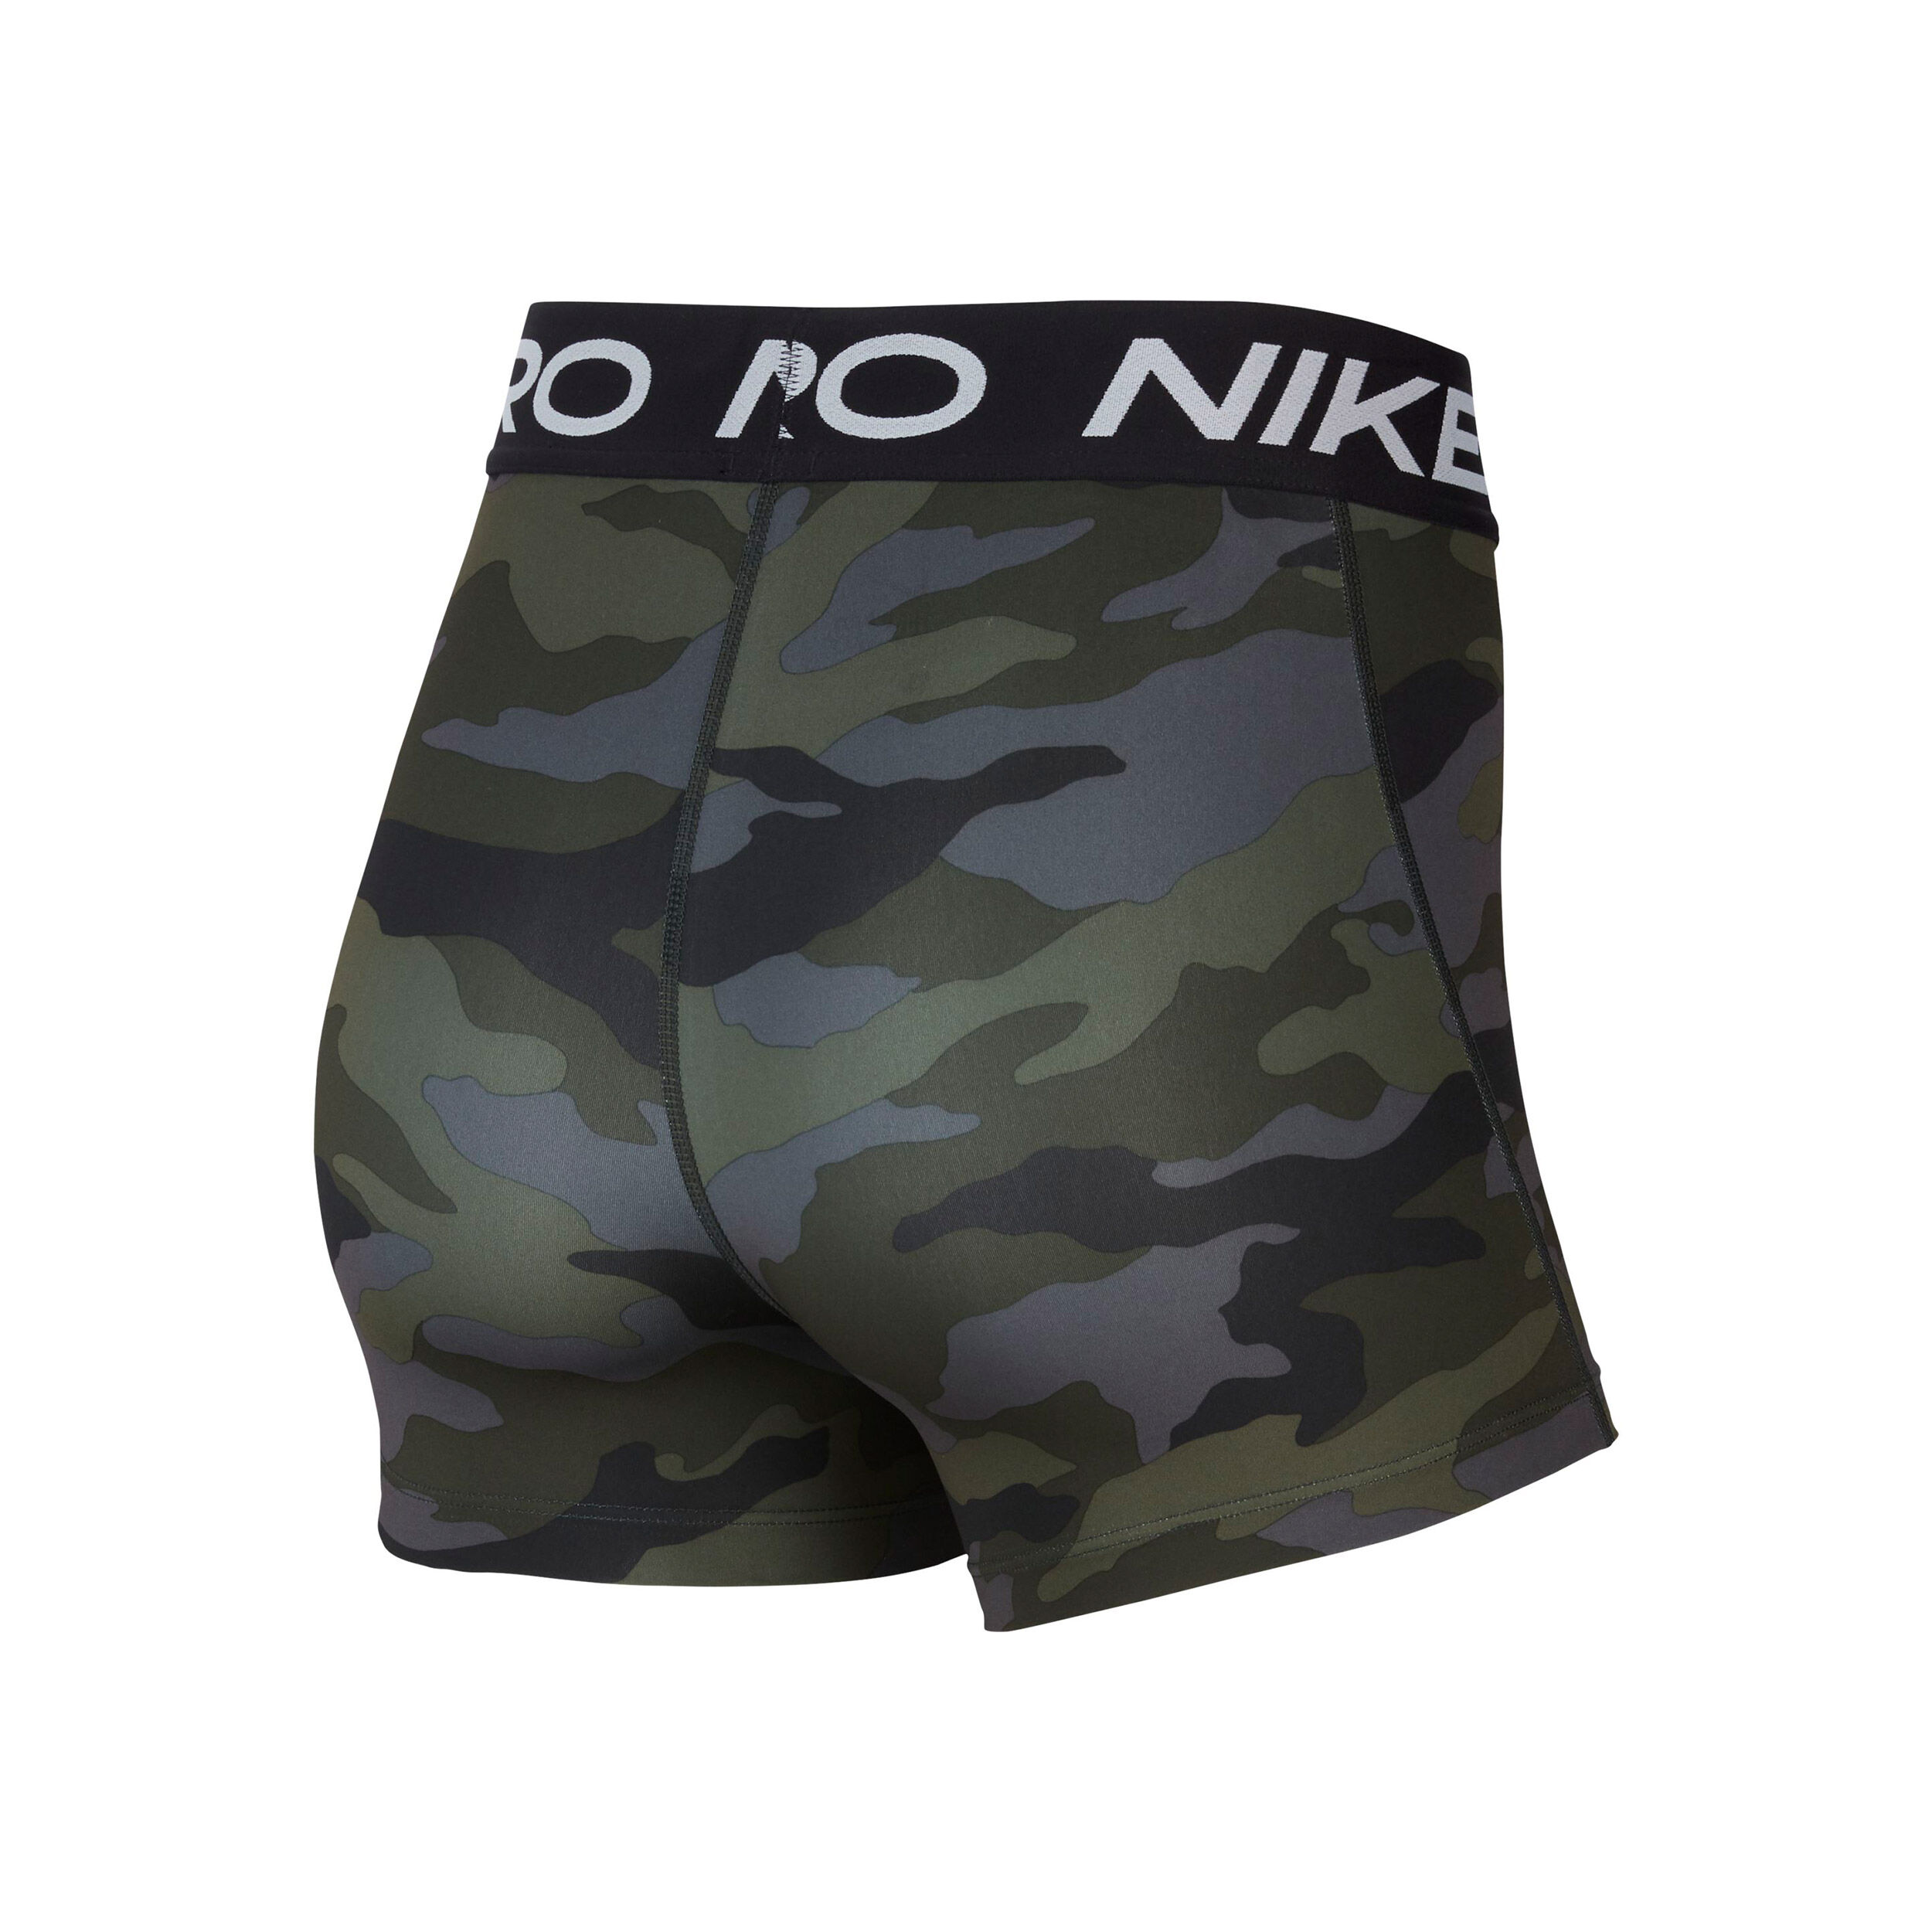 nike khaki shorts womens